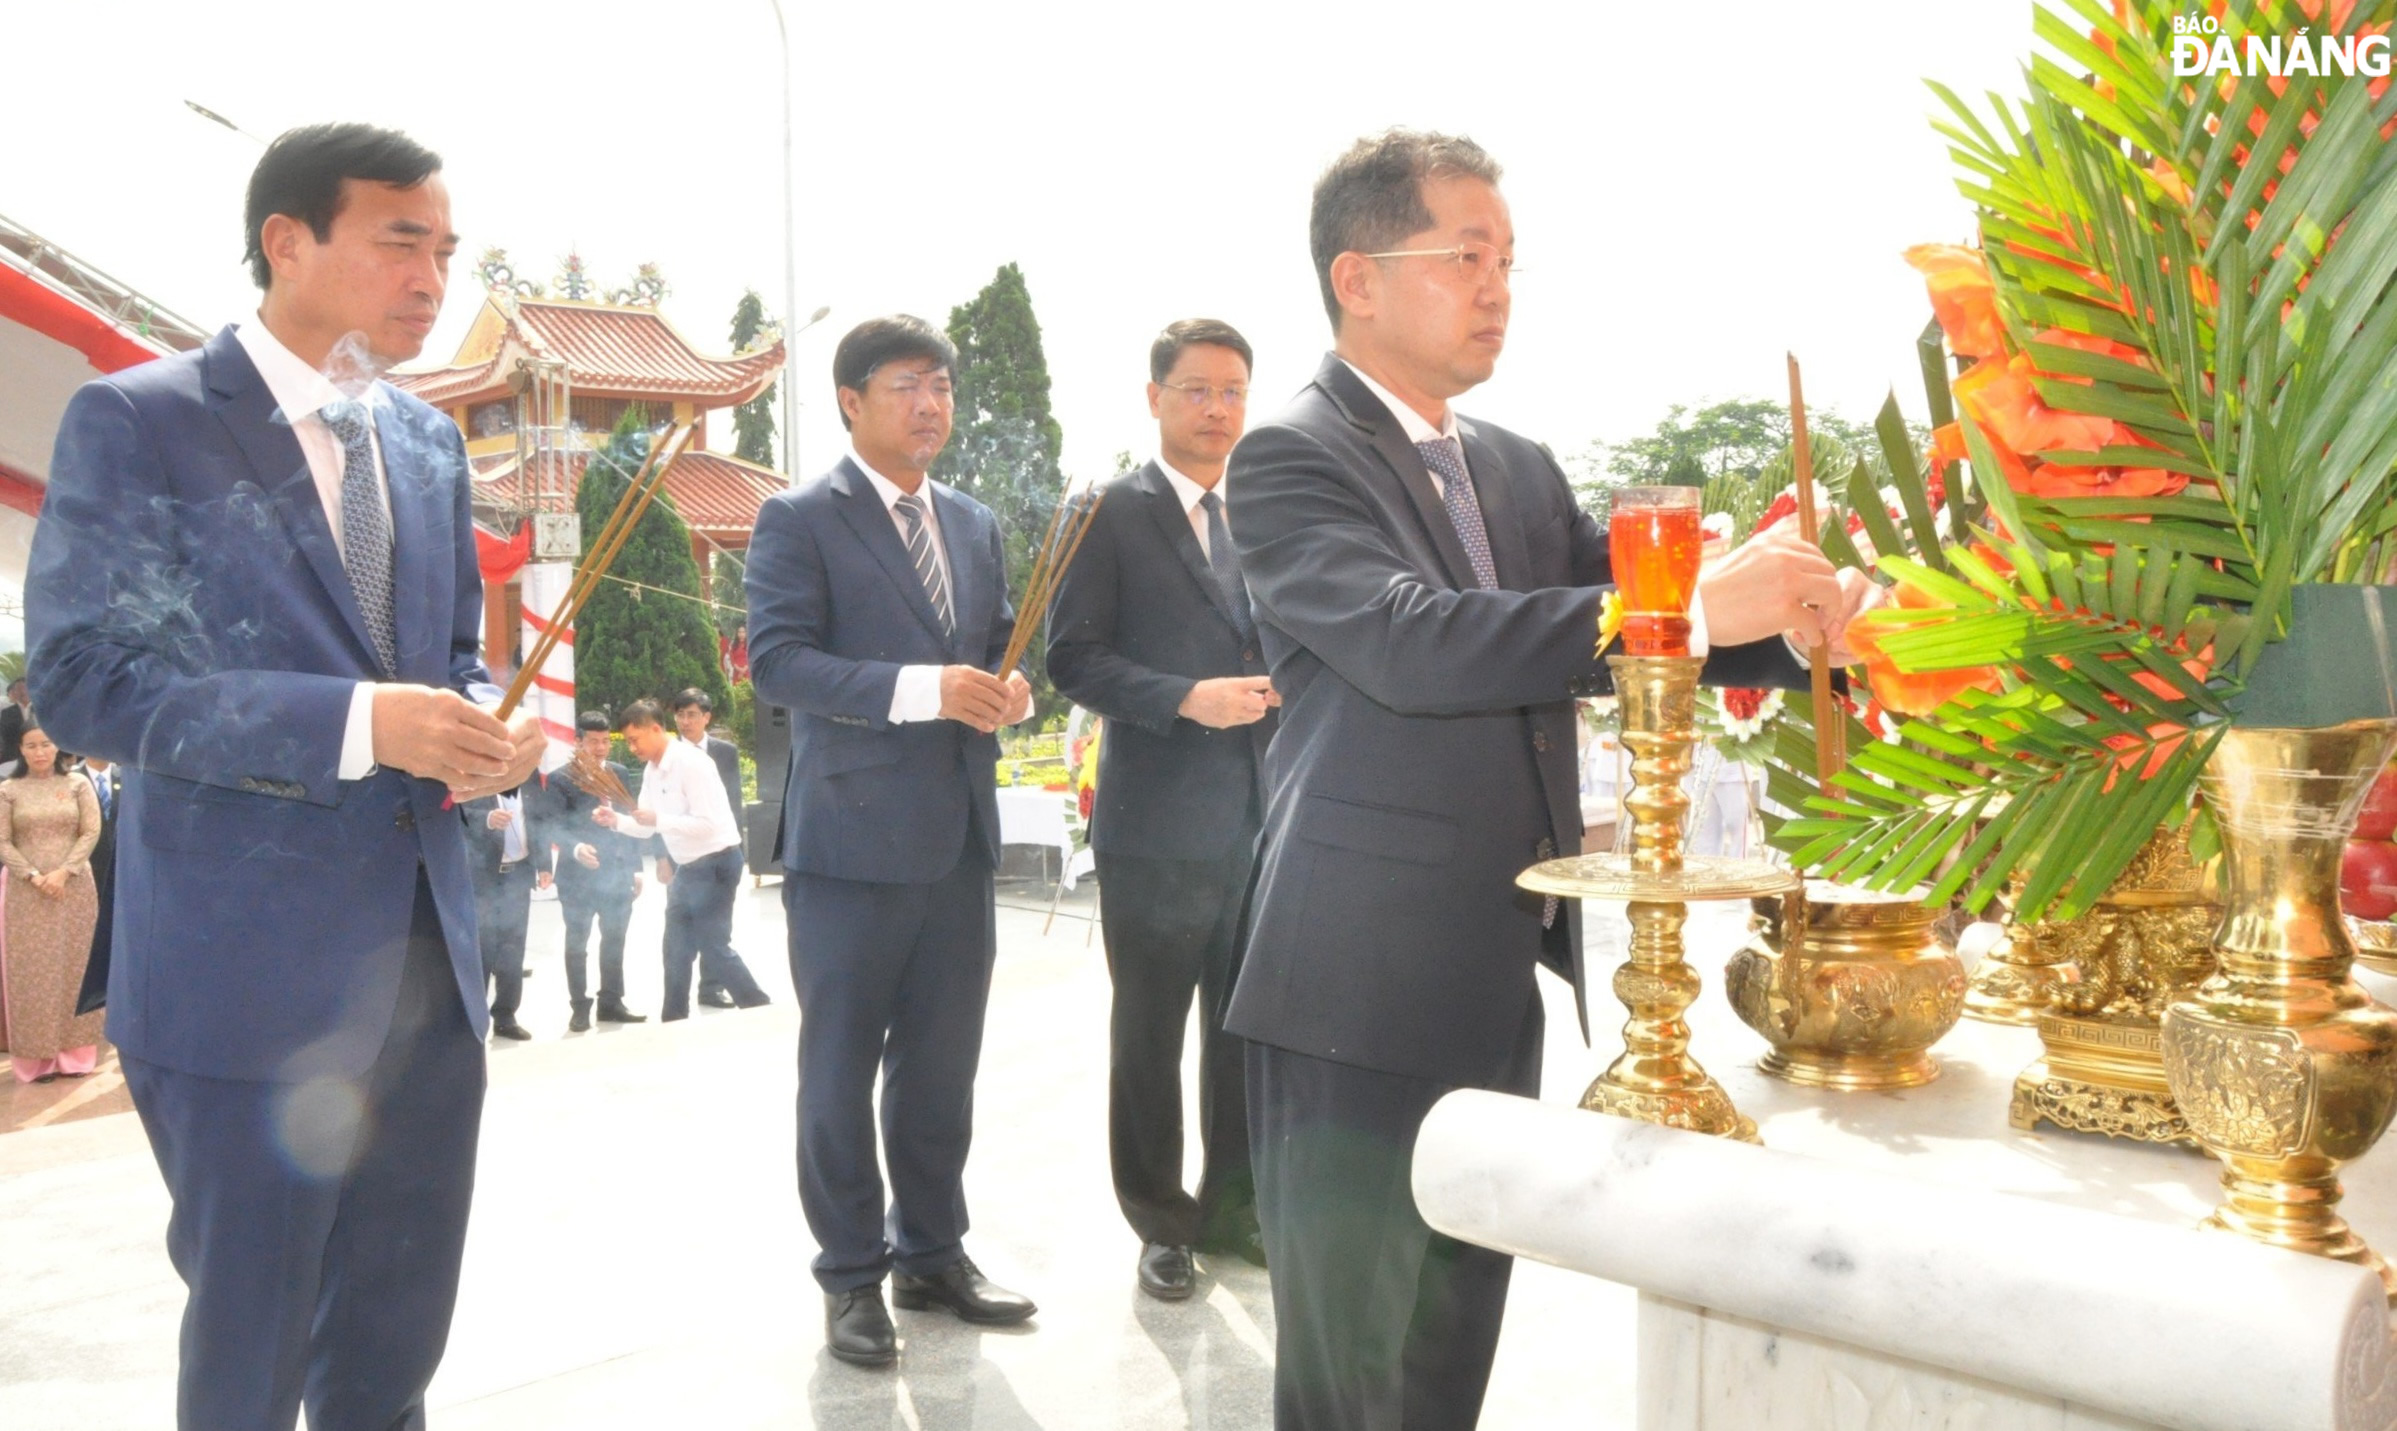 Đoàn lãnh đạo Thành ủy, HĐND, UBND, Ủy ban MTTQ Việt Nam thành phố đến đặt vòng hoa và dâng hương tưởng niệm các anh hùng, liệt sĩ tại Nghĩa trang liệt sĩ thành phố. Ảnh: LÊ HÙNG